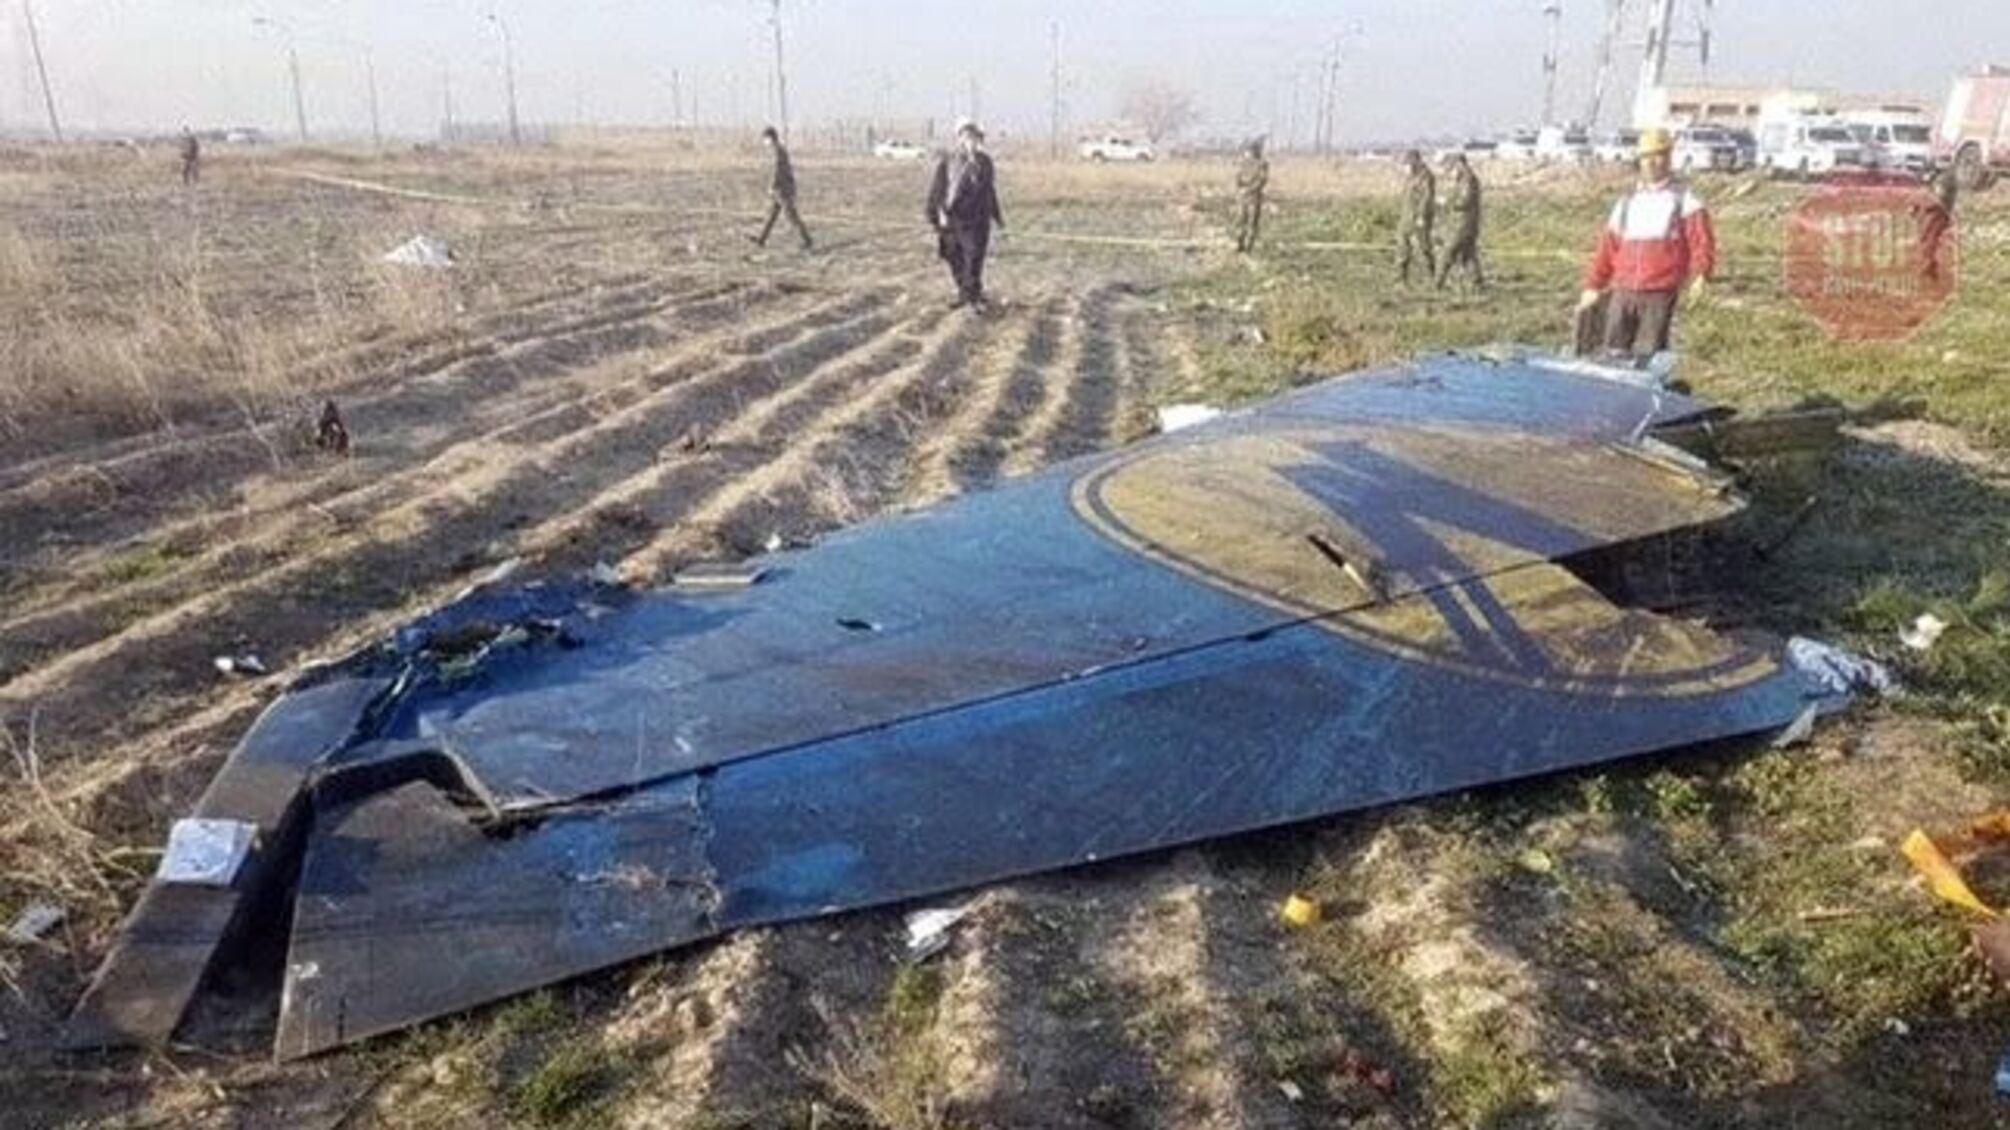 Стало відомо, коли Іран готовий розпочати двосторонні переговори з Україною щодо збитого літака МАУ